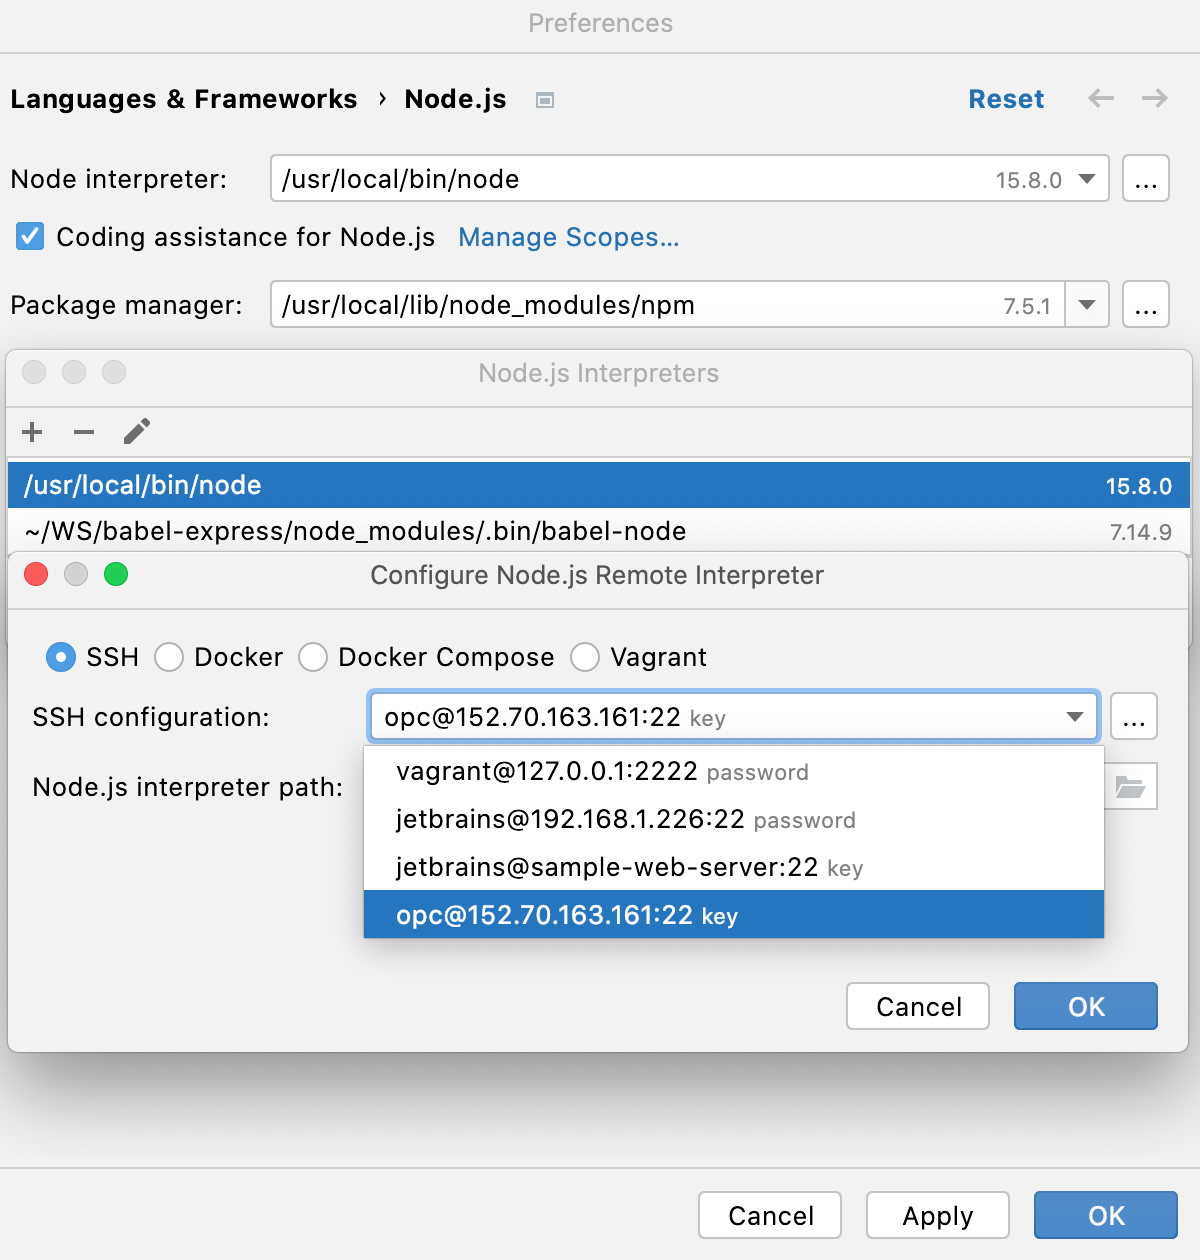 Configure remote Node.js interpreter via SSH: select SSH configuration